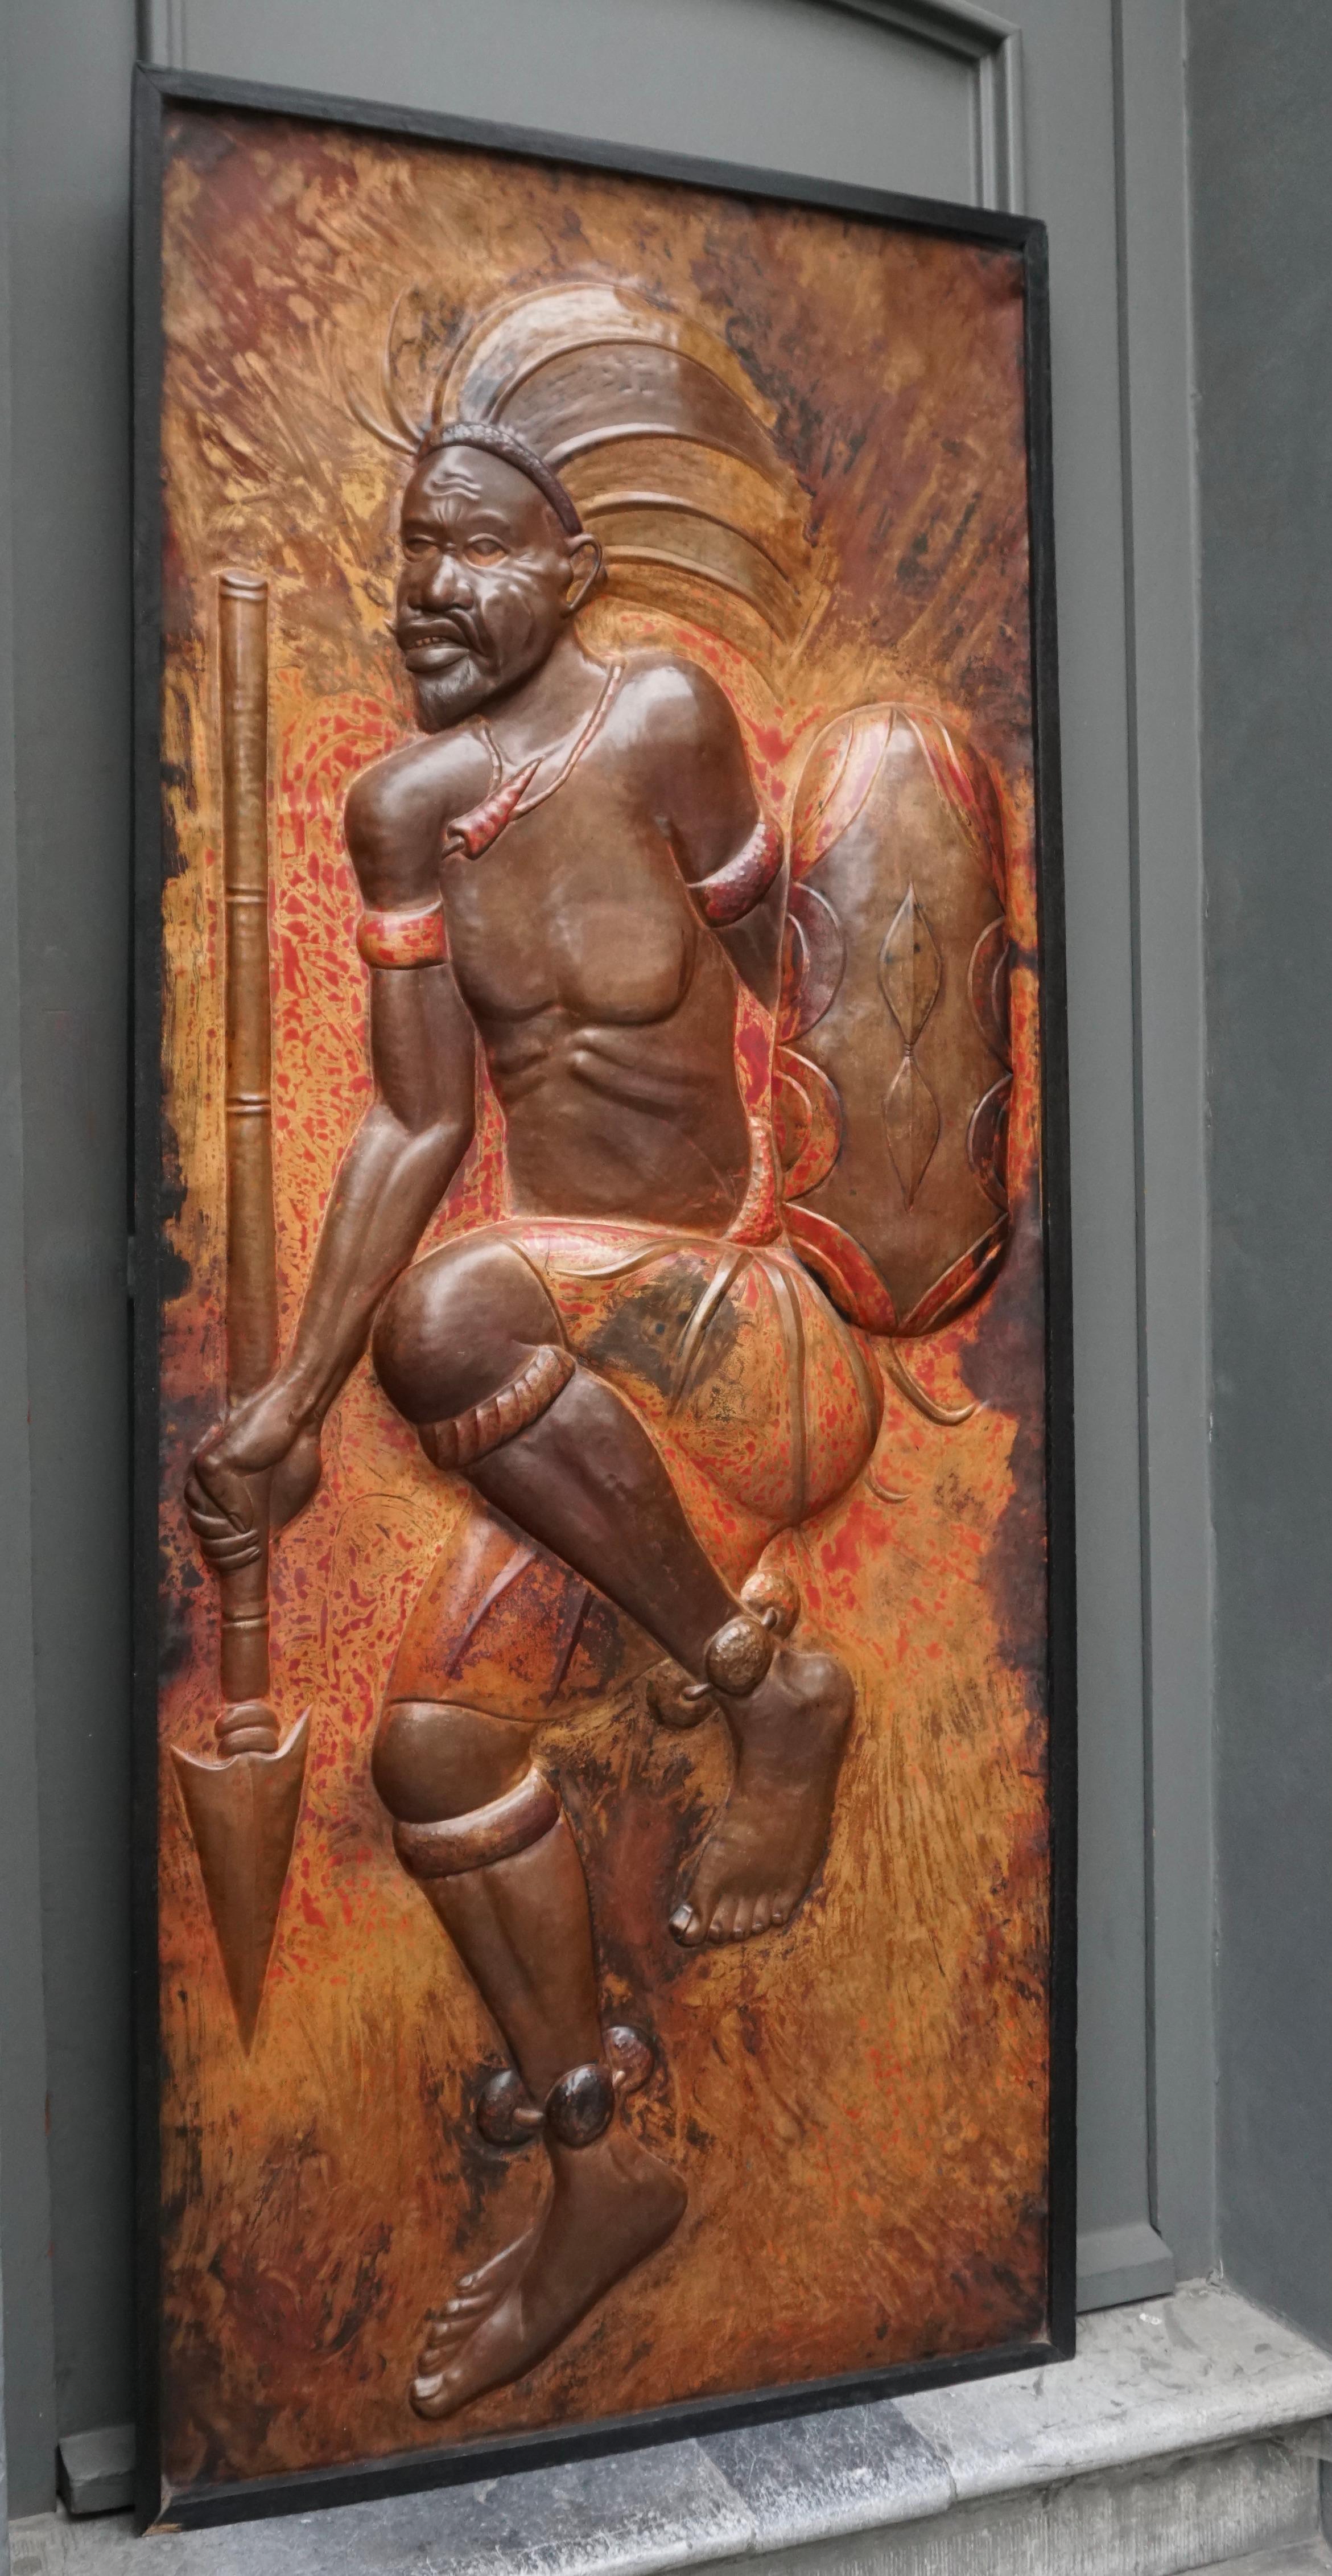 Seltene und schöne lebensgroße gehämmerte Kupfertafel eines tanzenden afrikanischen Kriegers mit Speer und Schild.

Wrought Kupferplatte im Stil der gefeierten Zaïre Künstler Gabriel Kalumba Tshung Manu (1940-2019), arbeitete im Kongo zwischen